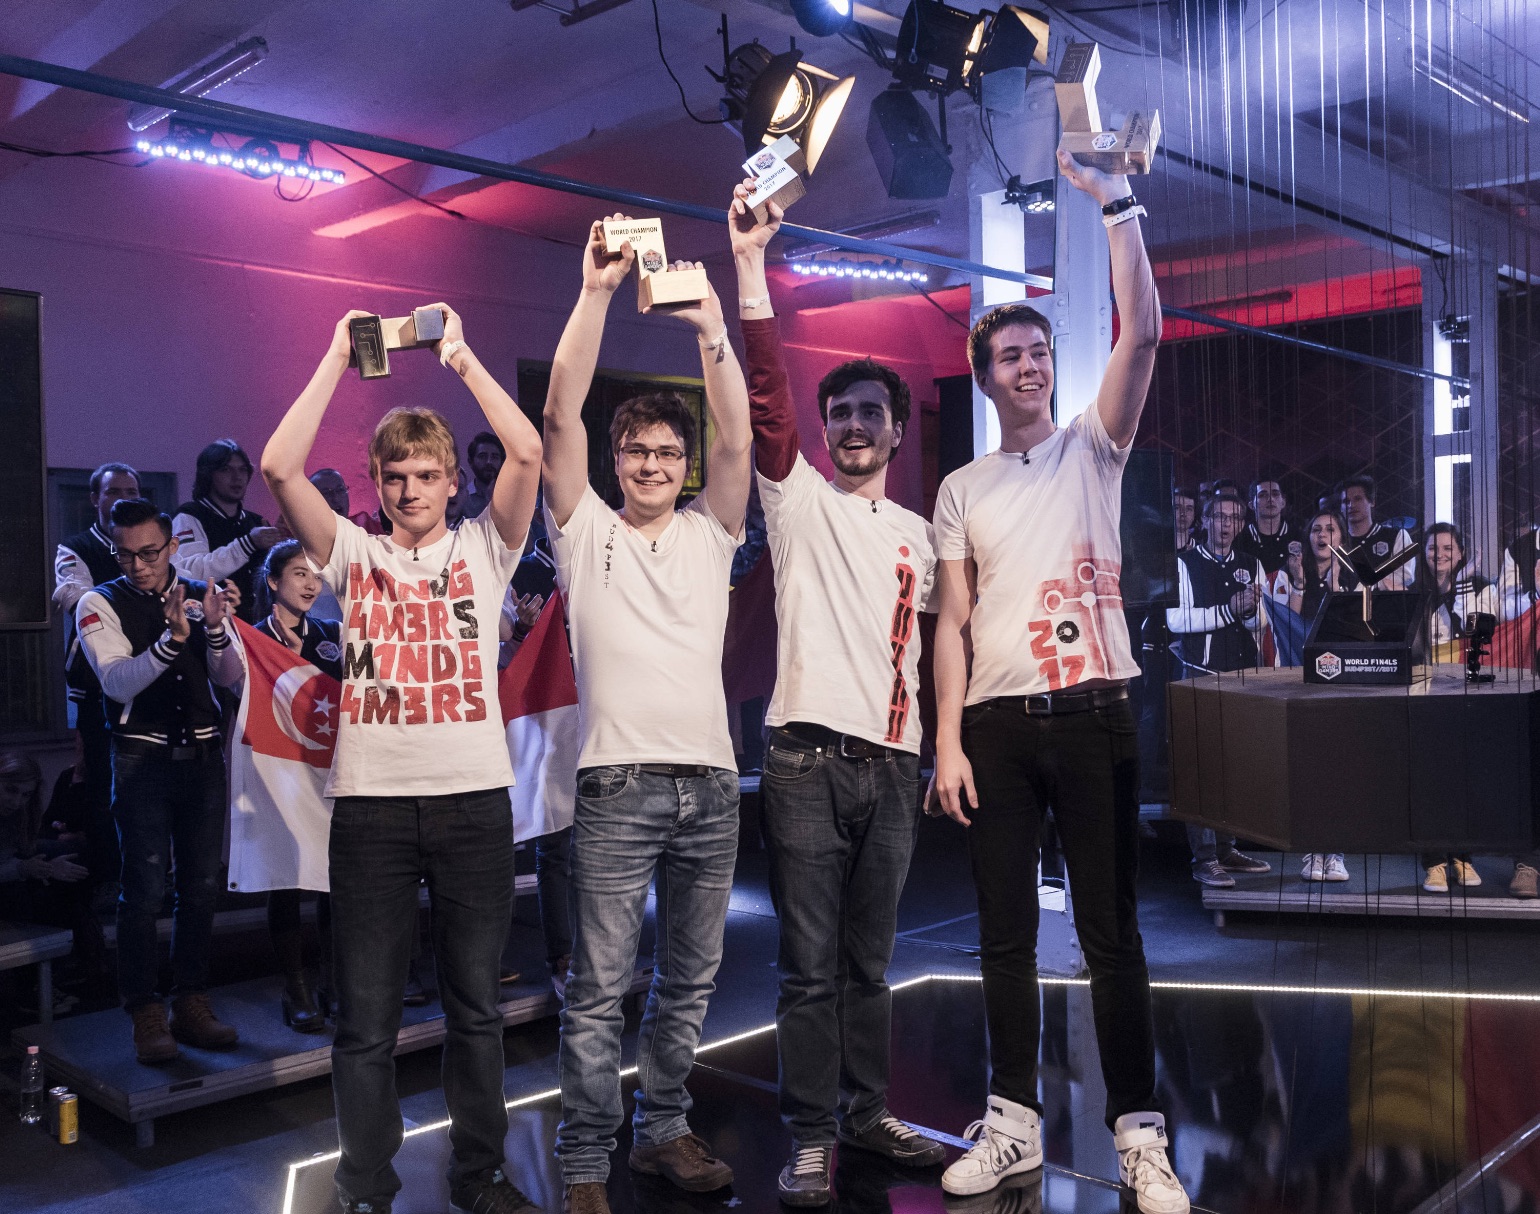 Red Bull Mind Gamers: La Slovenia vince i primi campionati mondiali di Escape Room